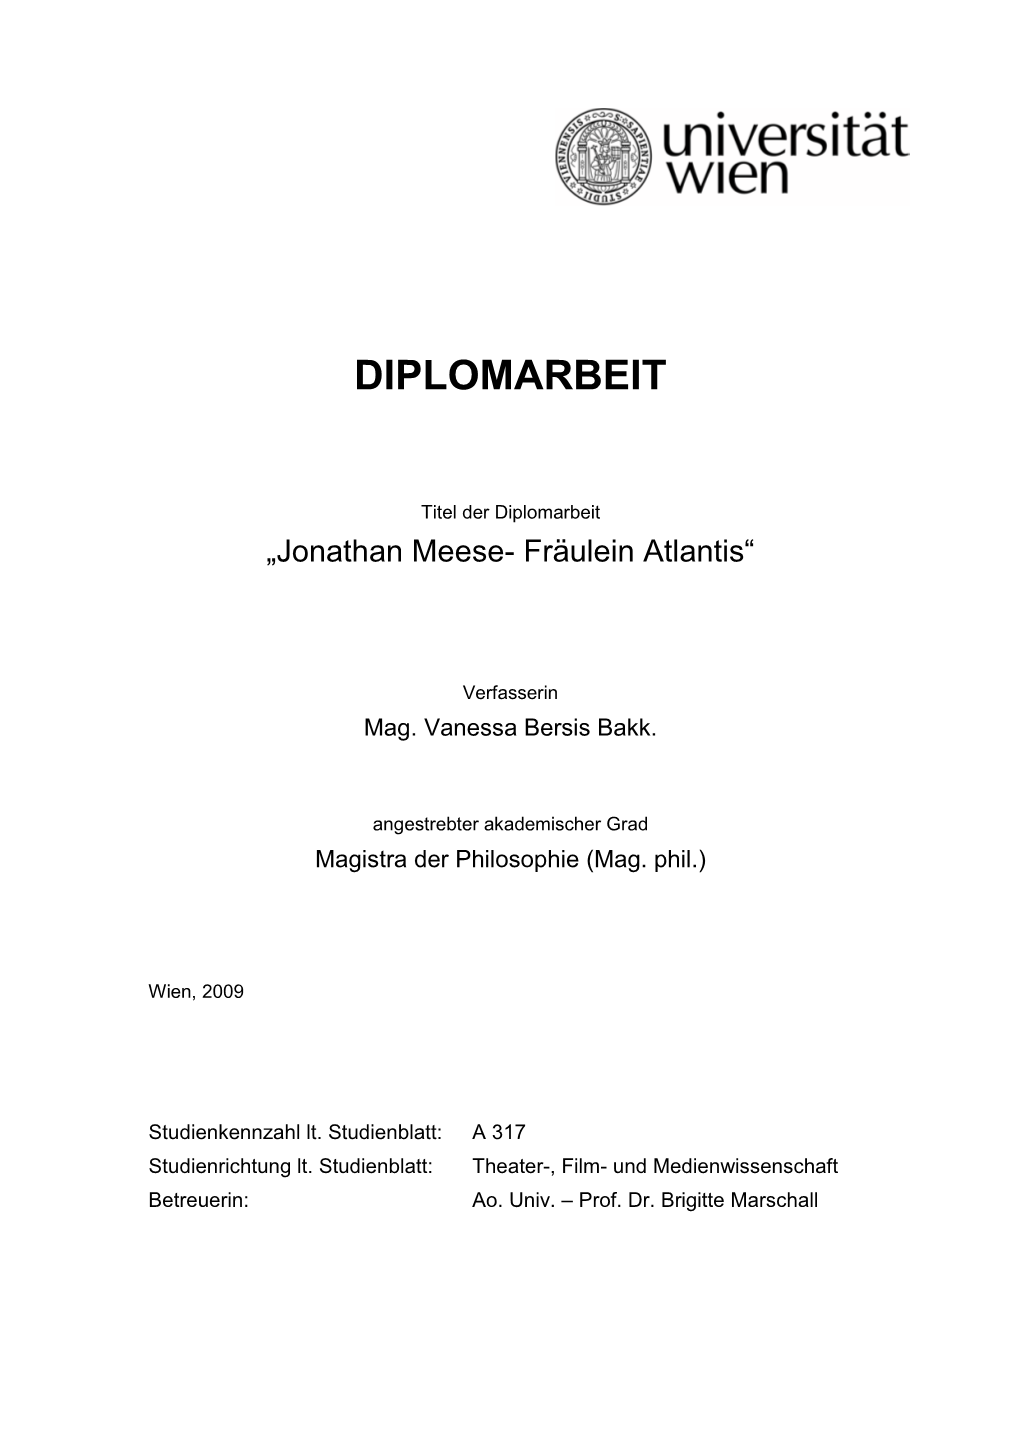 Jonathan Meese- Fräulein Atlantis“